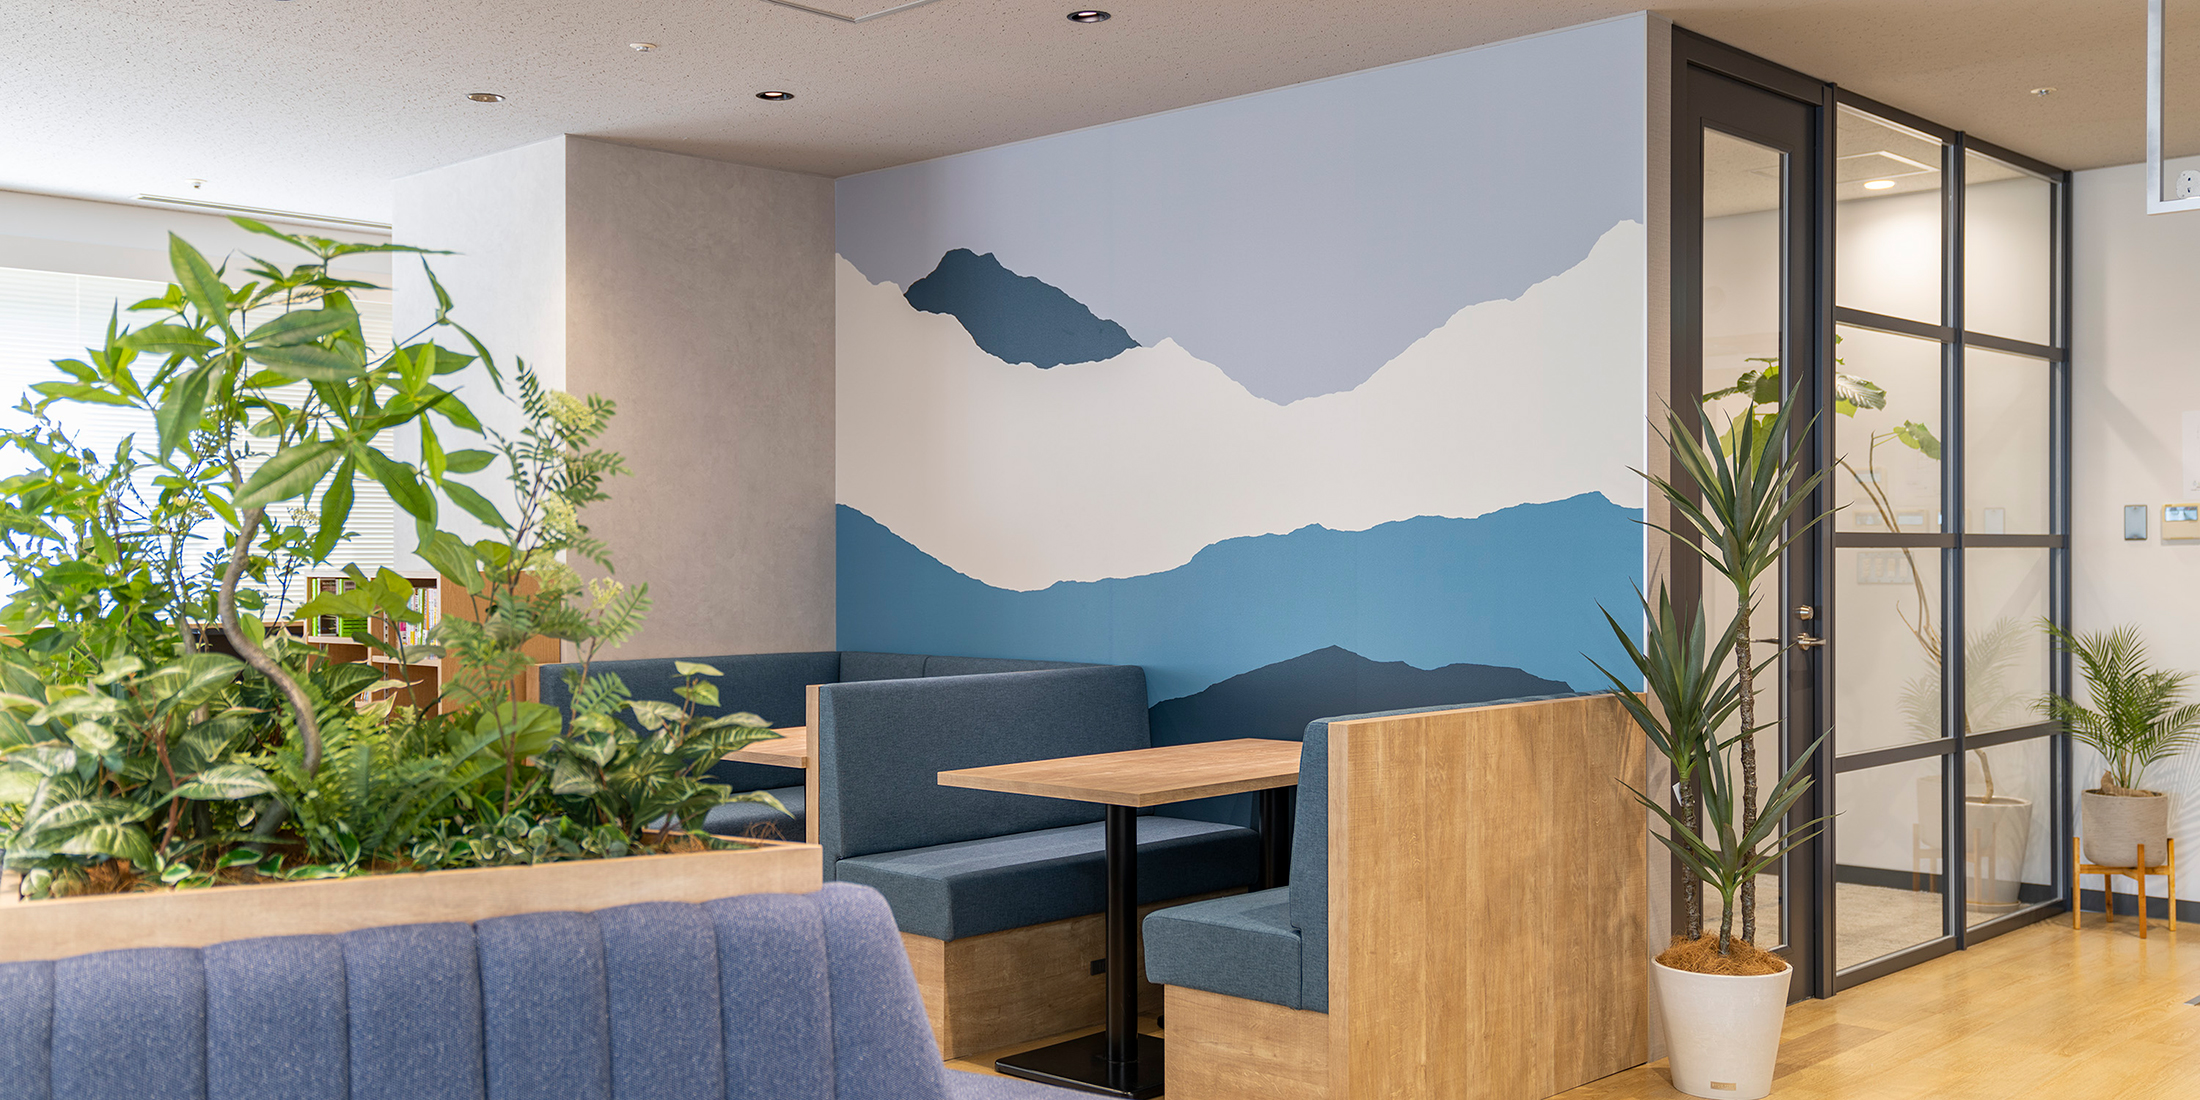 東京都渋谷区のオフィス・オープンスペースへコーポレートカラーであるブルーの山並みをグラフィカルに表現した壁紙を施工